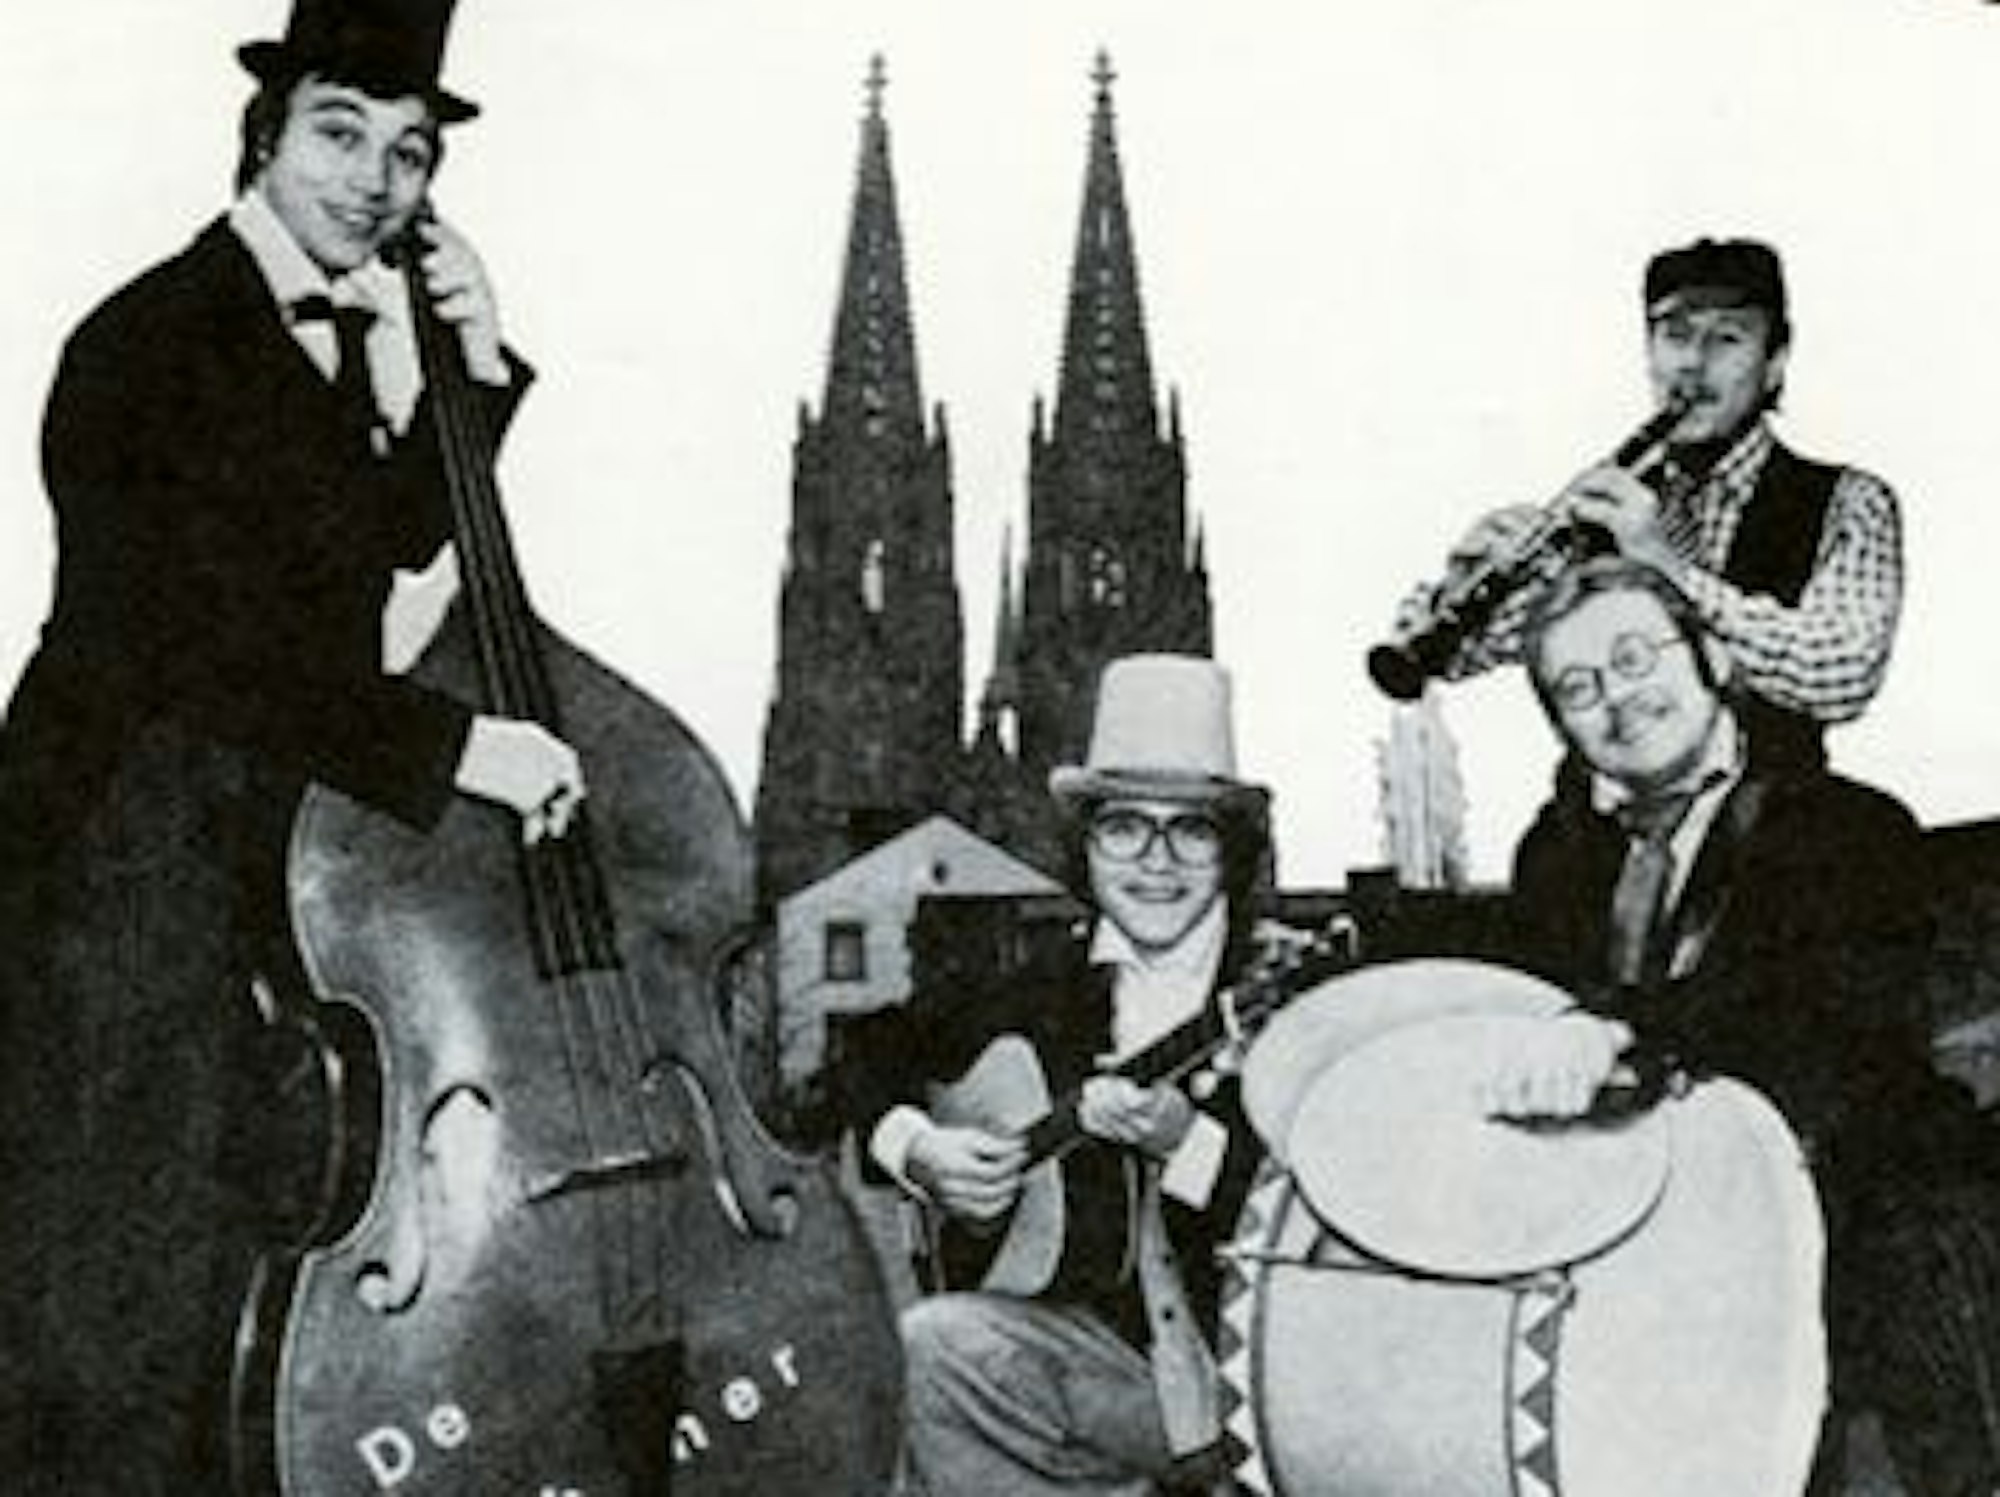 Archivfotoder Band im Jahr 1976